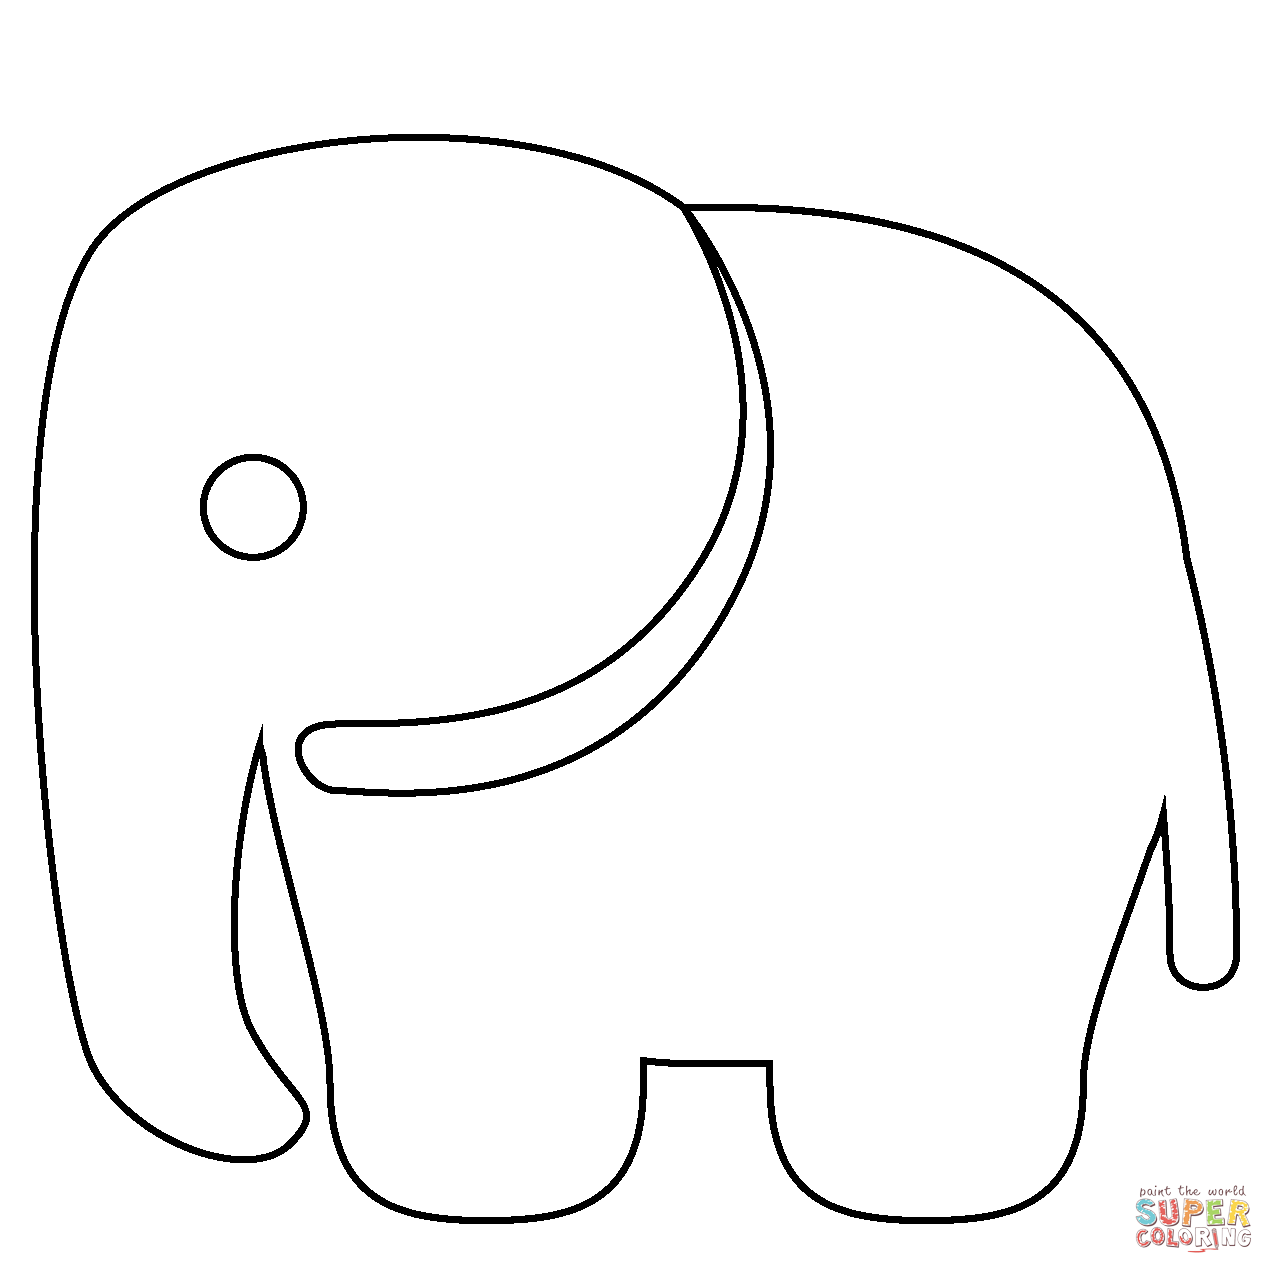 Ausmalbild: Elefanten Emoji  Ausmalbilder Kostenlos Zum Ausdrucken Regarding Blank Elephant Template